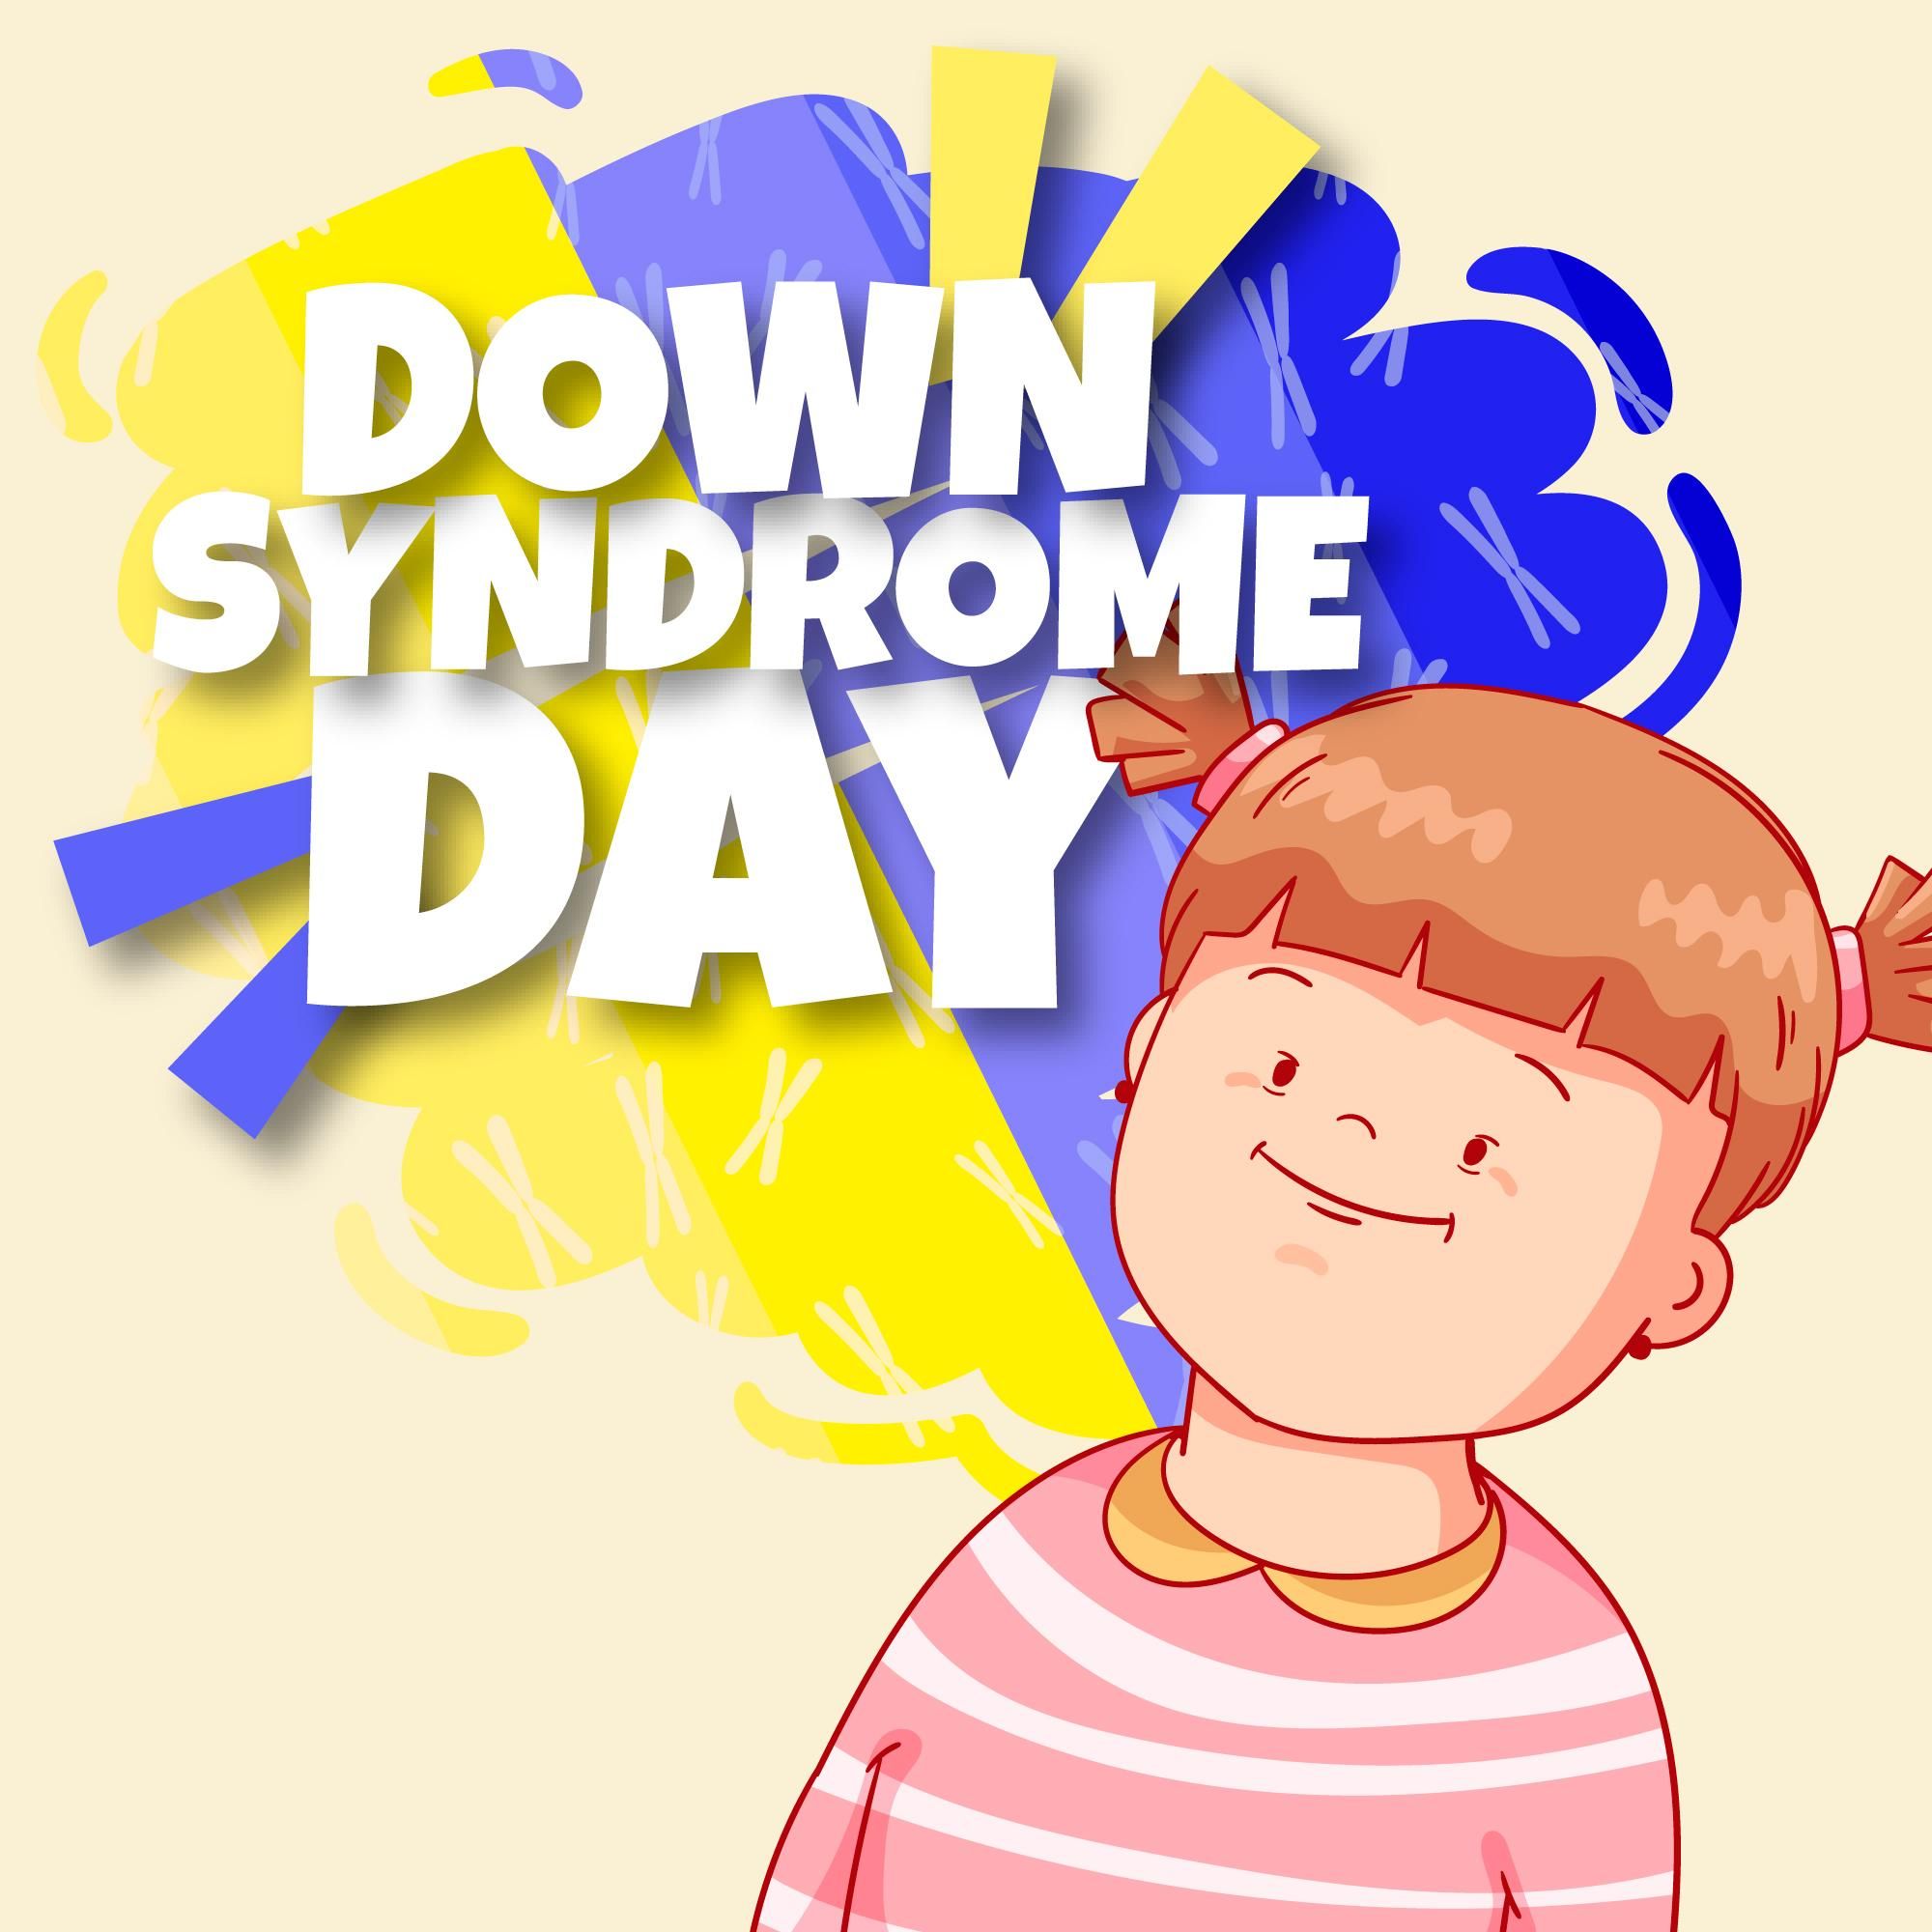 Día Mundial de las Personas con Síndrome de Down